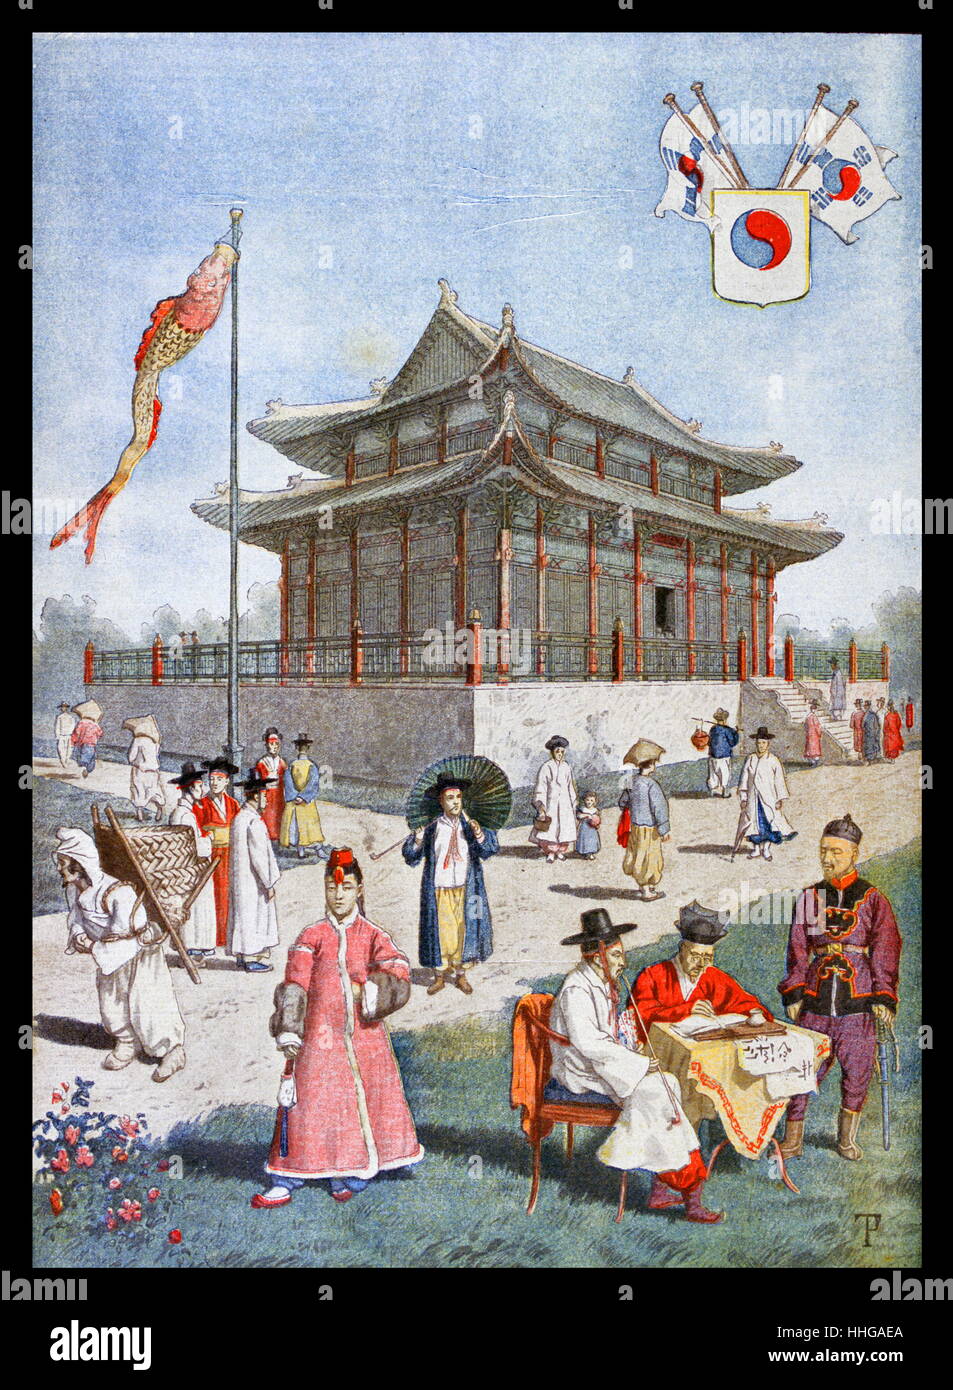 Koreanische Pavillon Auf der Exposition Universelle von 1900. Dies war eine Messe in Paris, Frankreich, statt, von 14. April bis 12. November 1900, die Errungenschaften des vergangenen Jahrhunderts zu feiern und Entwicklung in die nächste zu beschleunigen. Stockfoto